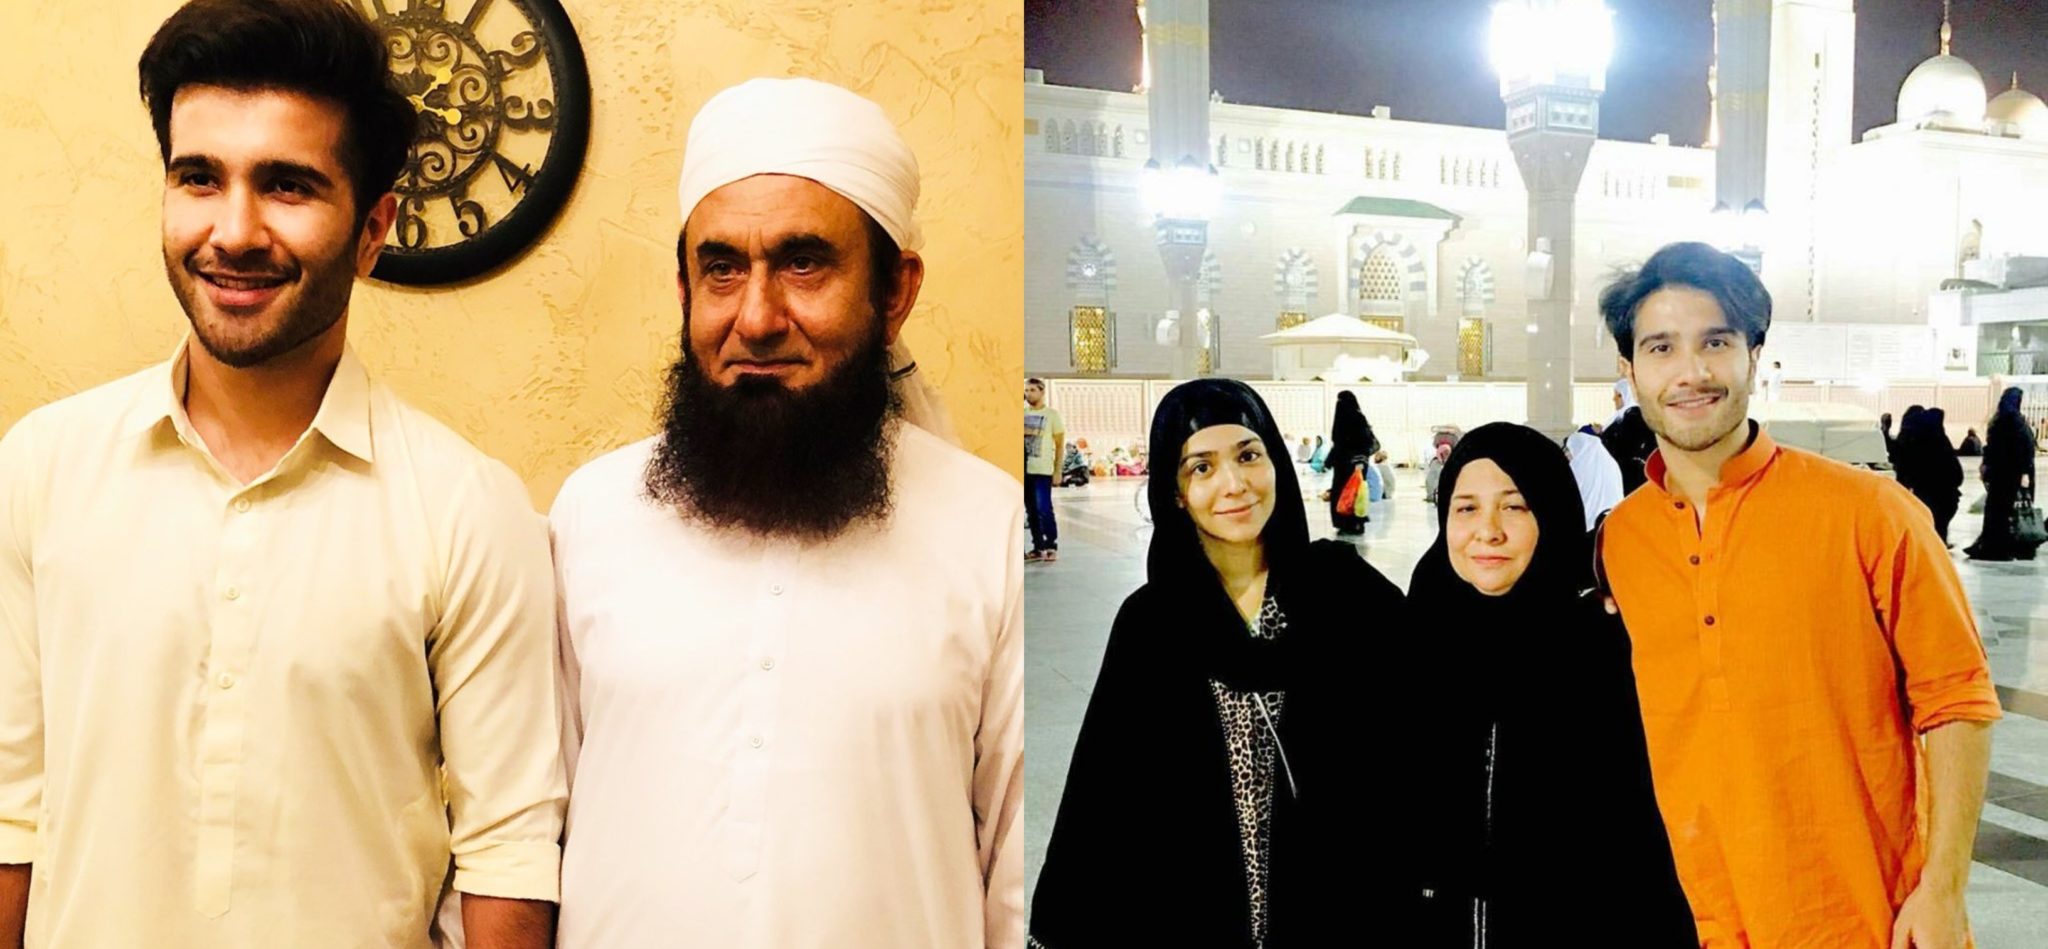 feroze khan left showbiz for islam